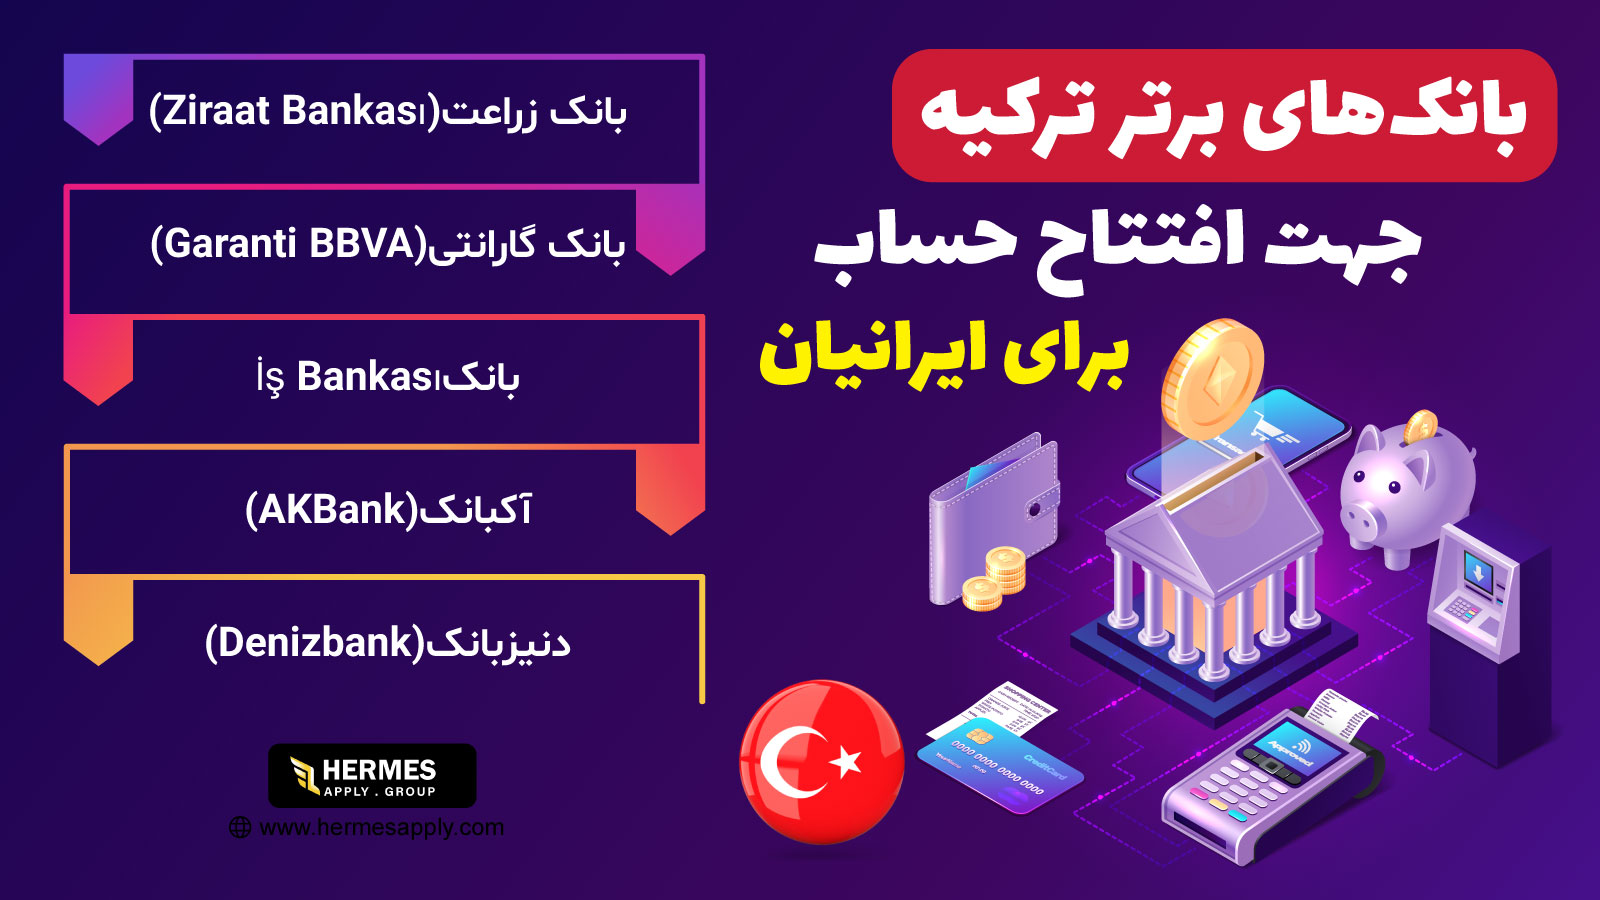 بانک های برتر ترکیه جهت افتتاح حساب برای ایرانیان